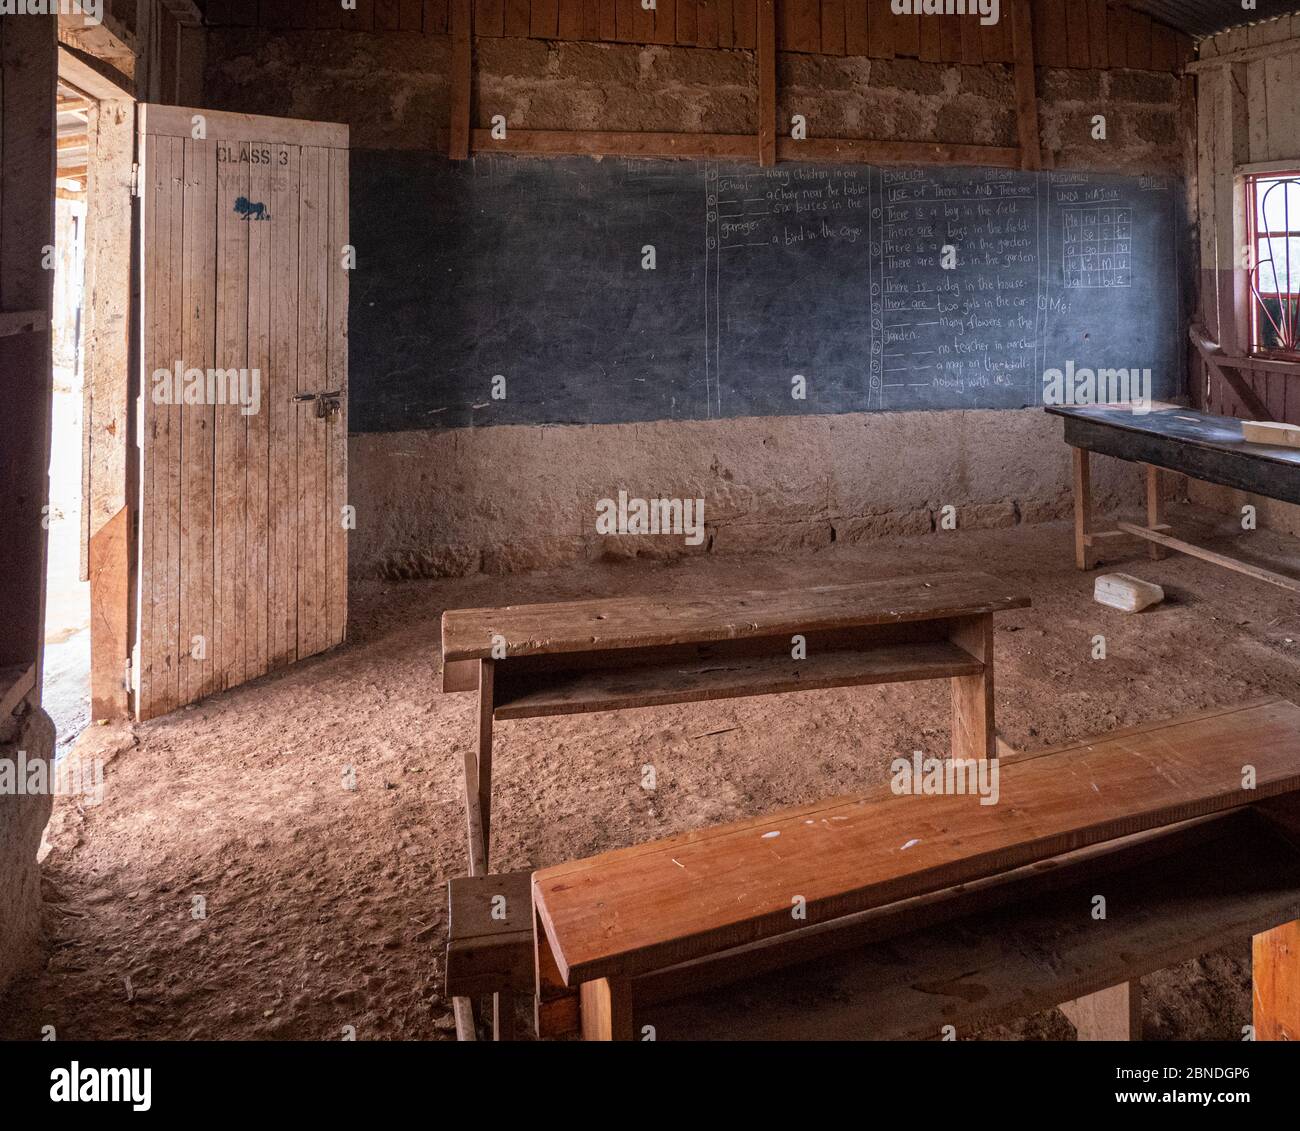 Typical poor school in Kenya with dirt floor and old wooden desks Stock Photo